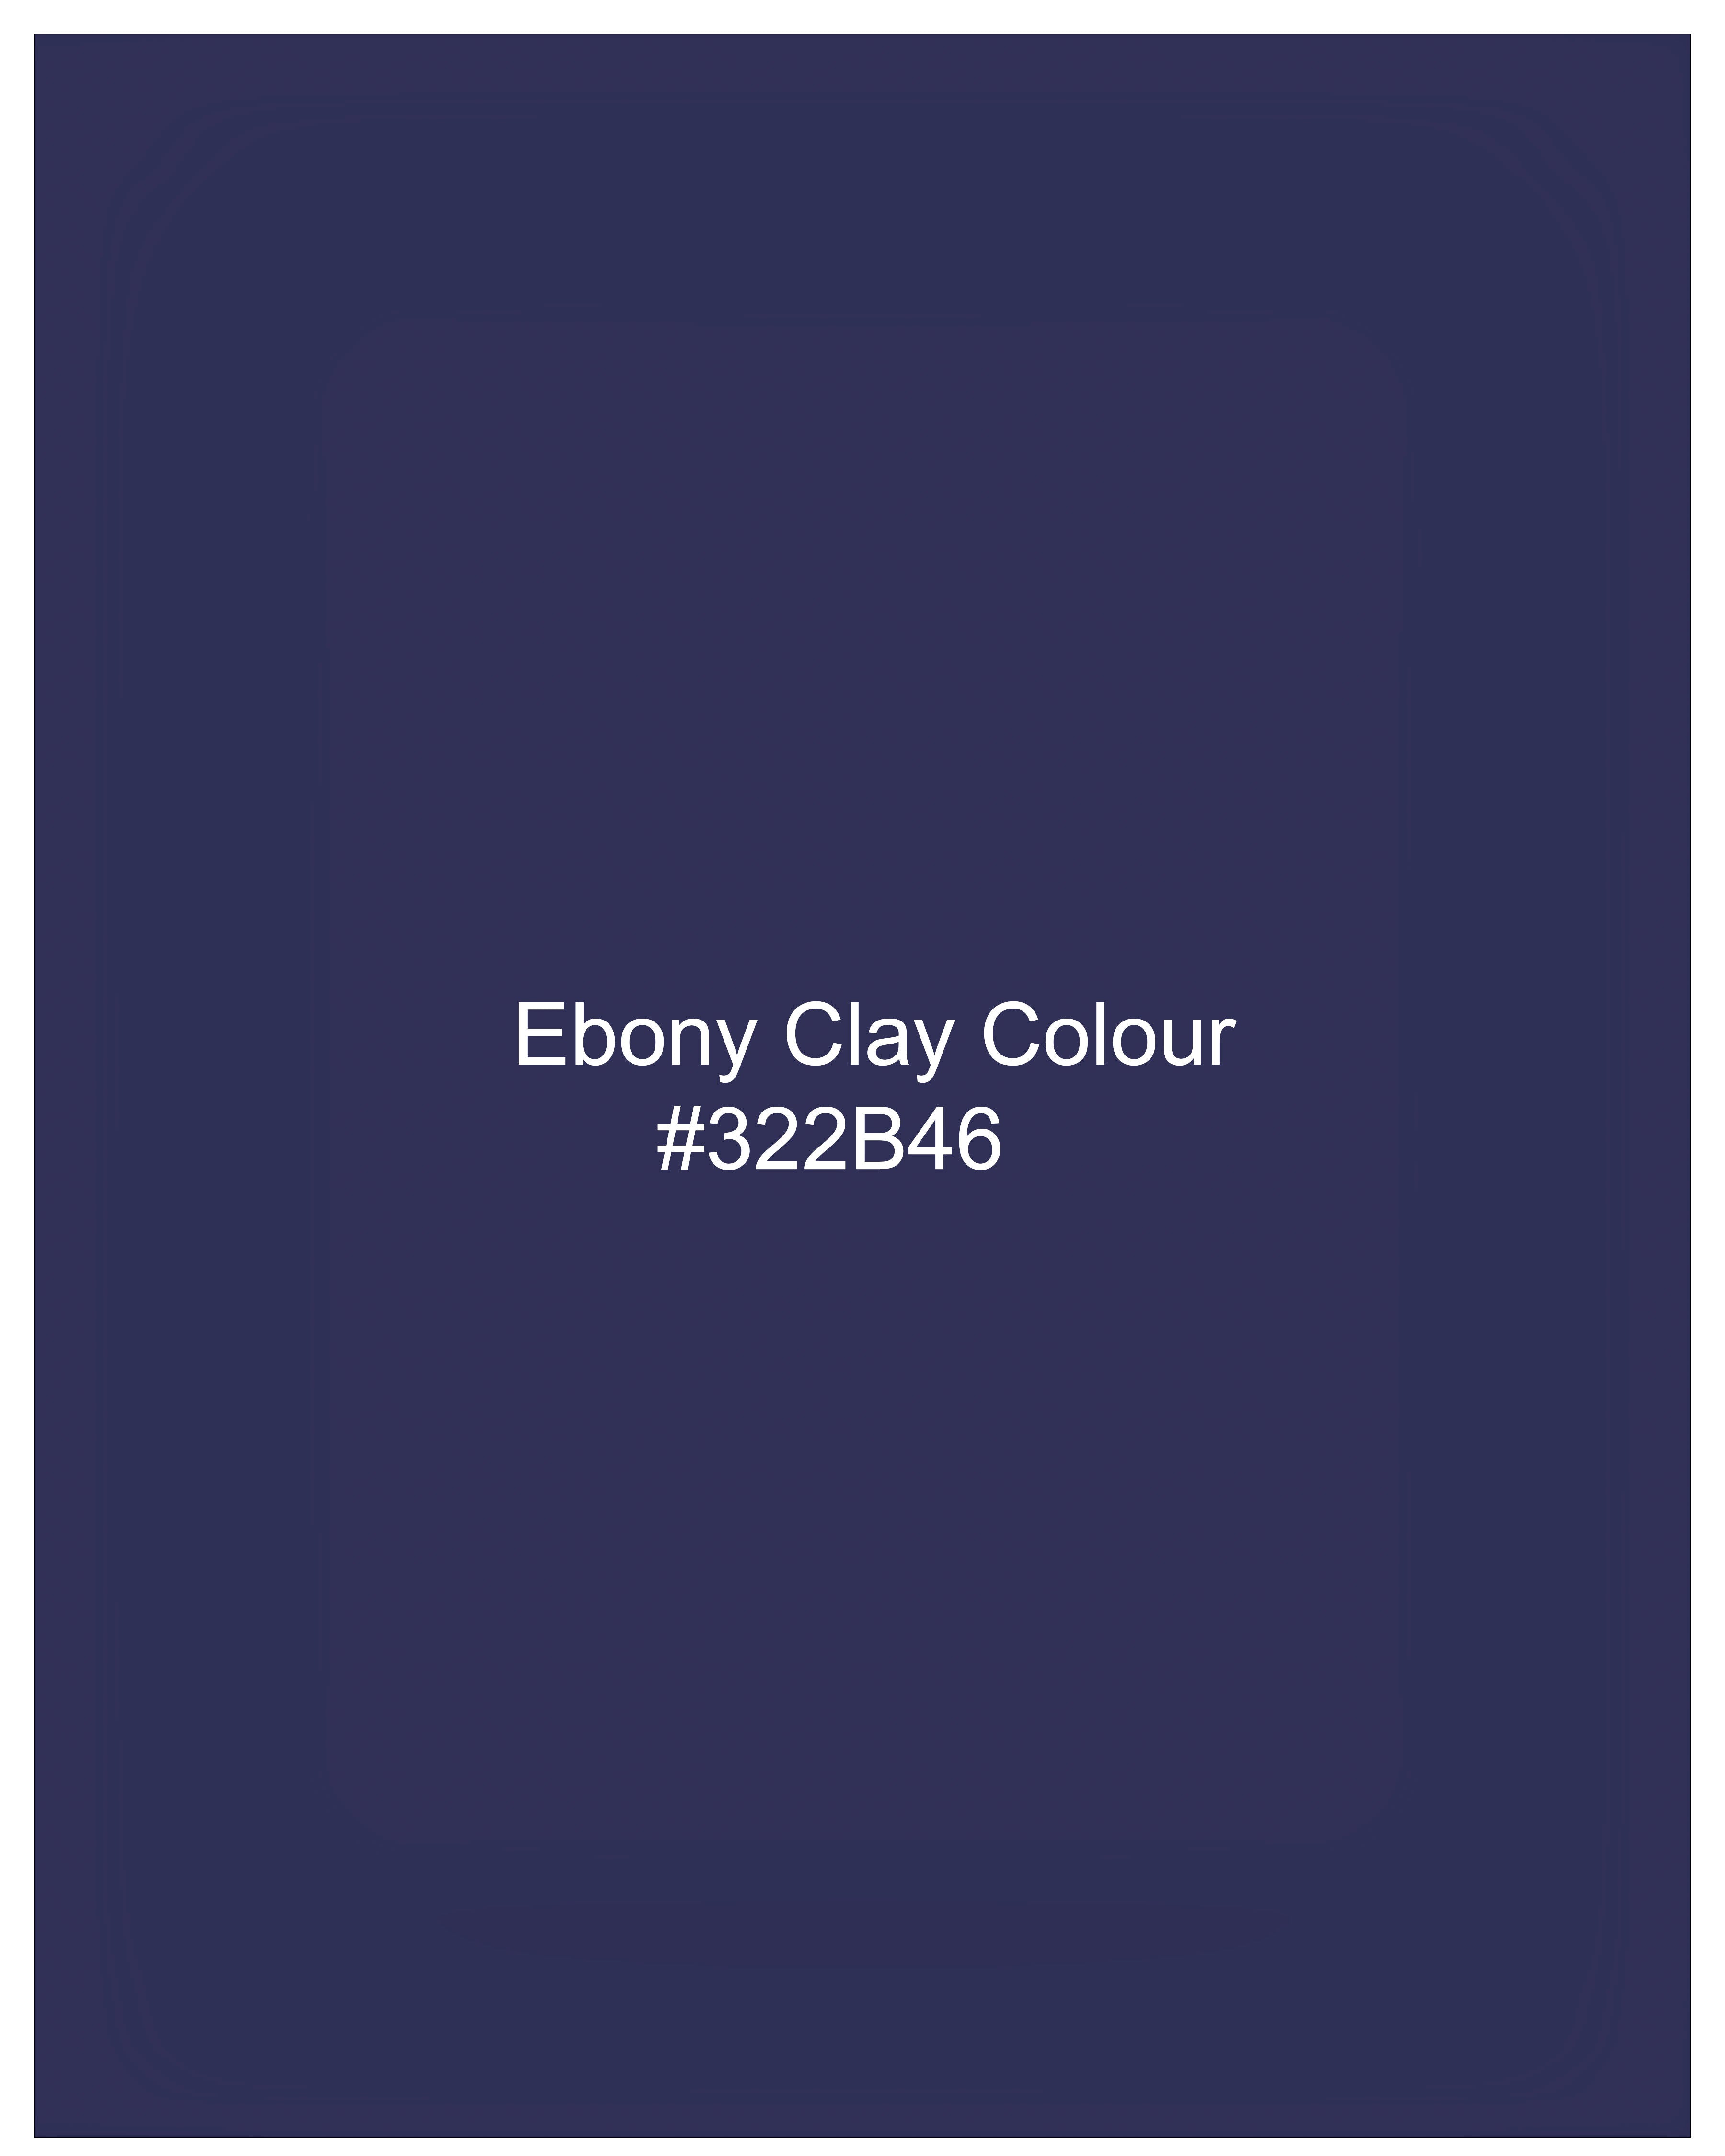 Ebony Clay Navy Blue Cross Placket Bandhgala Blazer